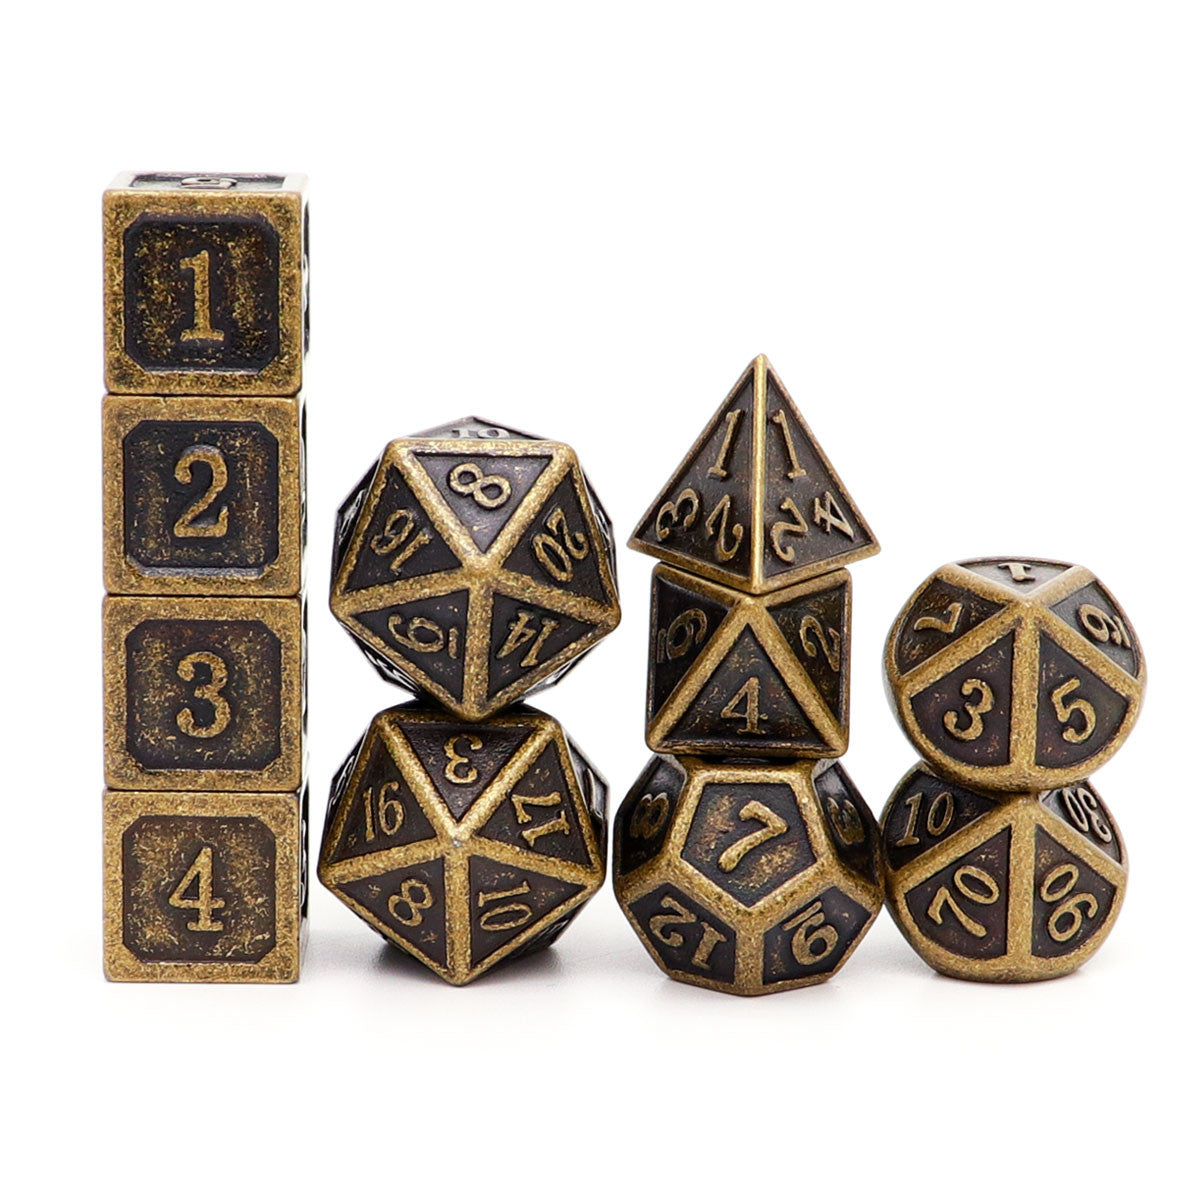 antique dice, metal dnd dice, dice set, bronze dice, metal dice, dnd dice, 11pcs dice